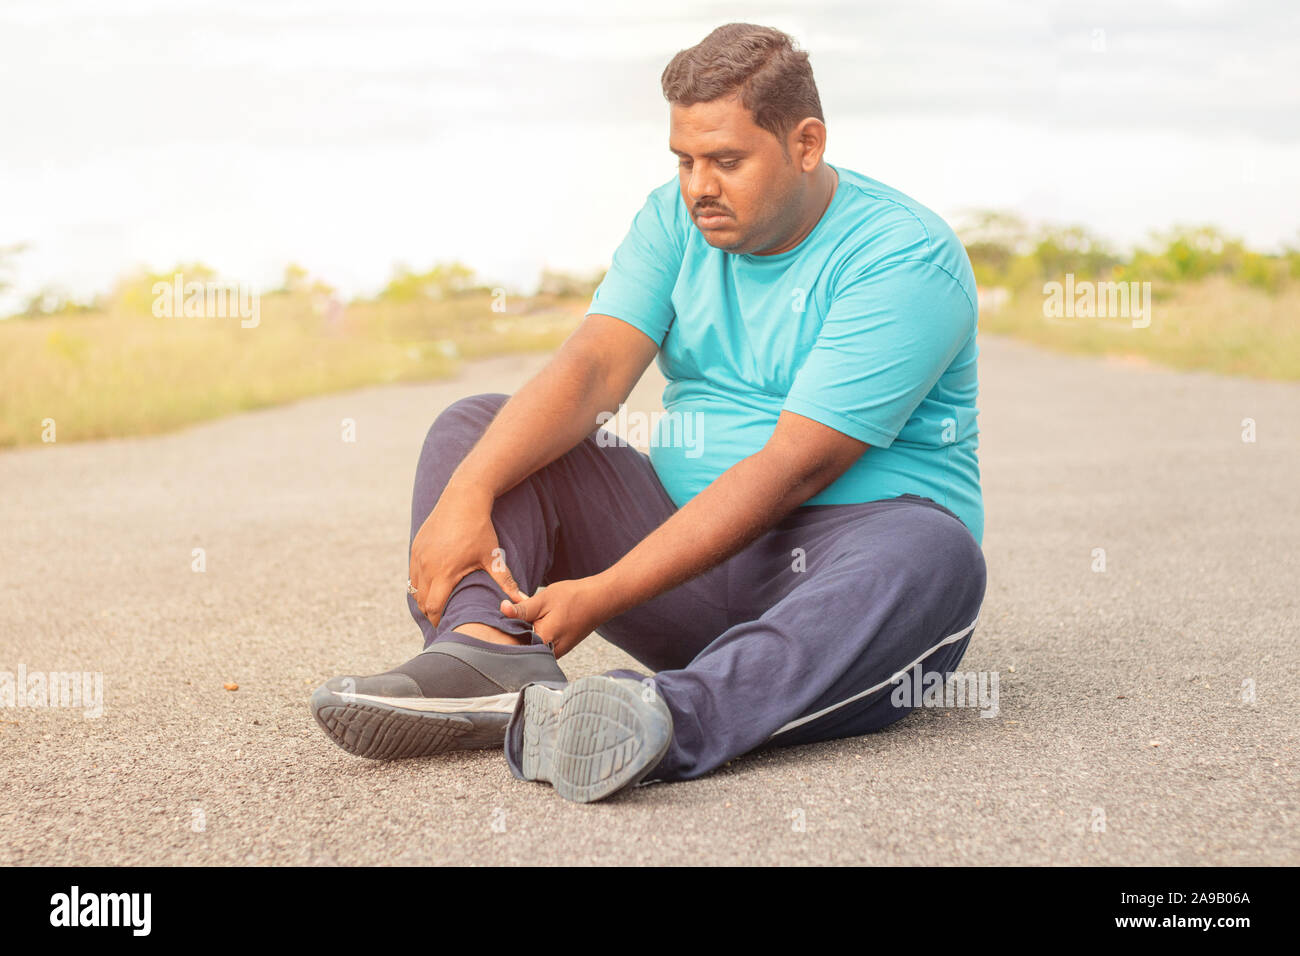 Concetto di gamba lesioni tendinee di uomo grasso - persona obesa azienda gamba sofferenza dolore muscolare - Uomo sovrappeso concetto fitness al parco all'aperto. Foto Stock